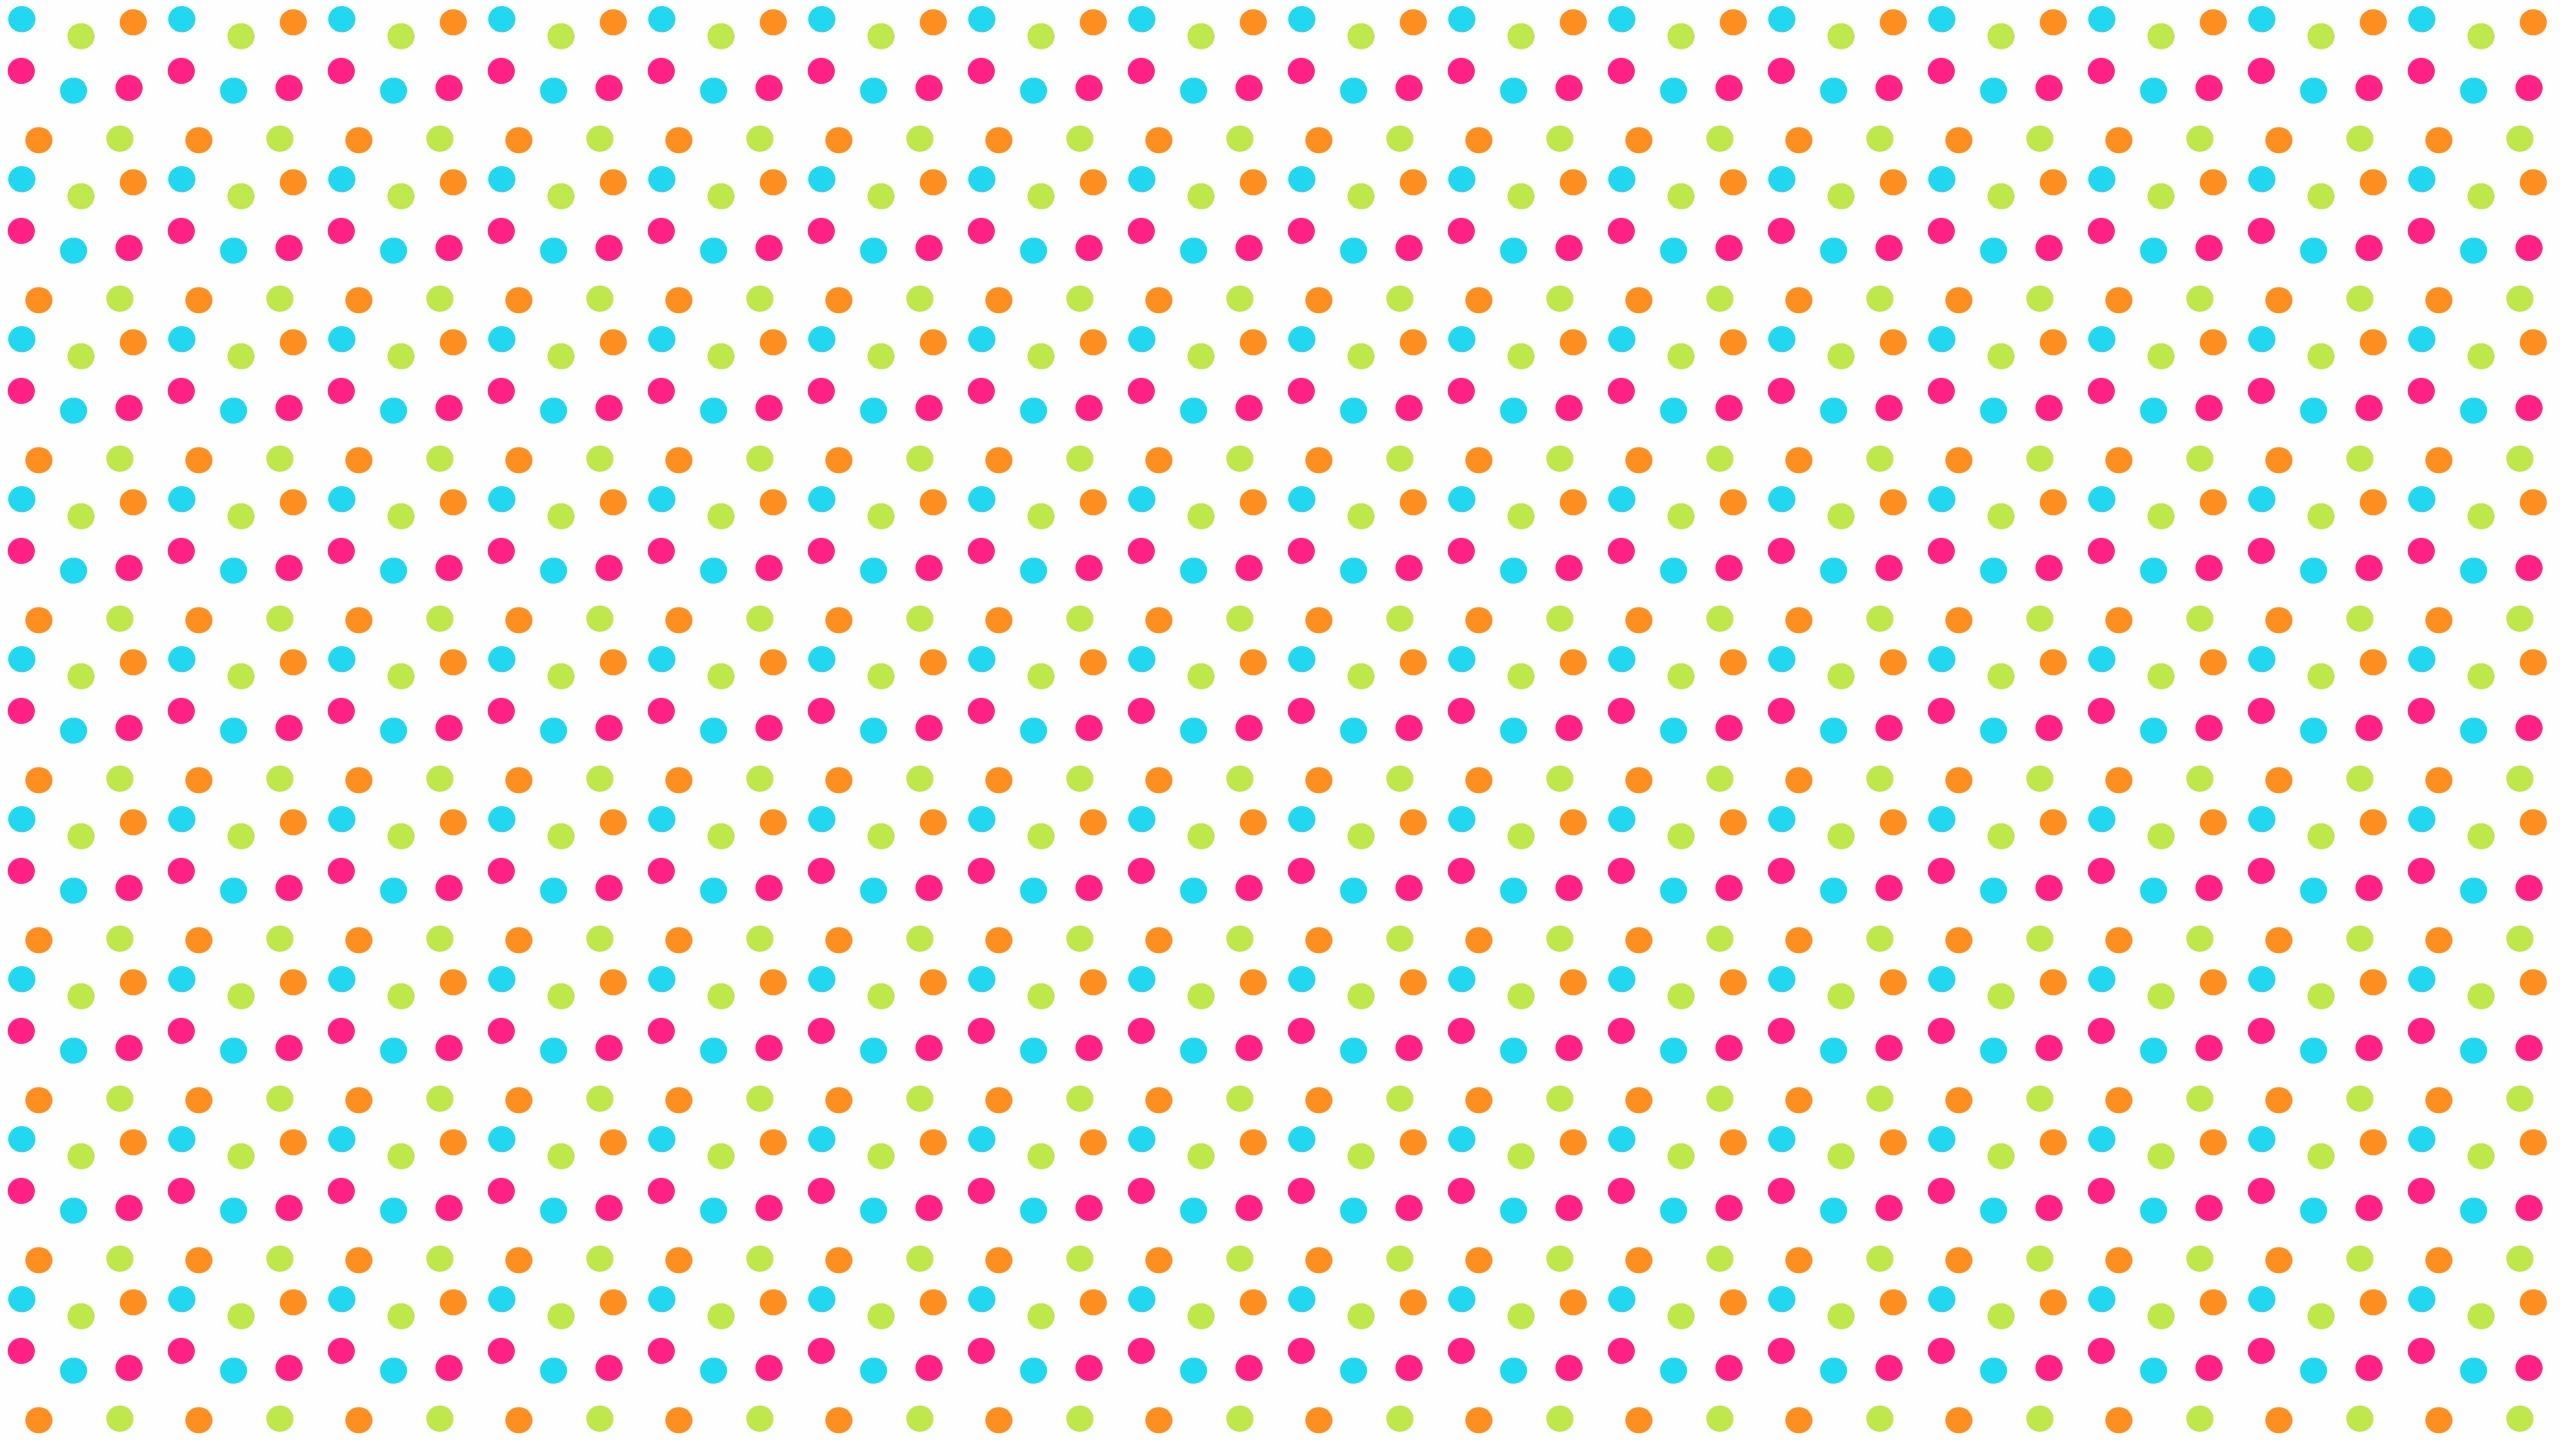 20 Cool Polka Dot Wallpapers